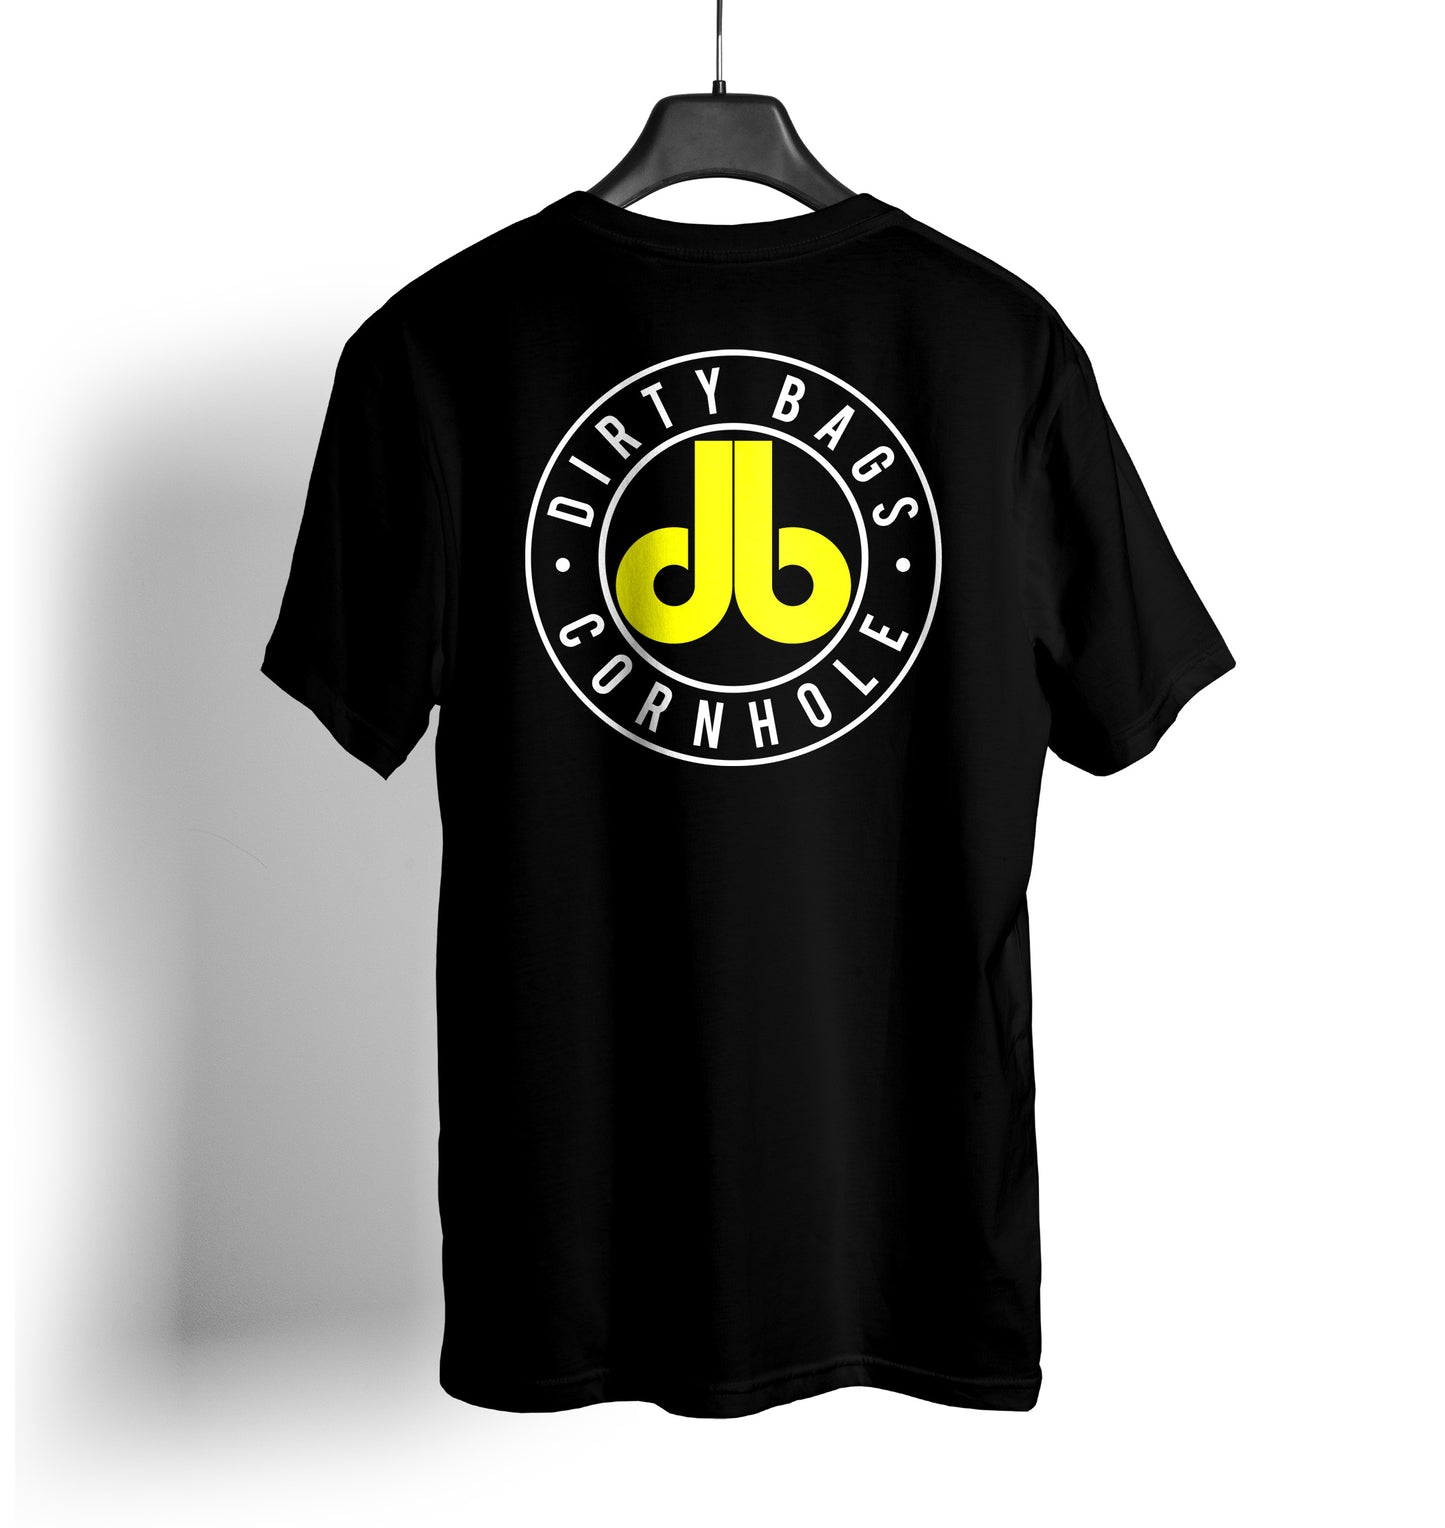 db Cornhole T Shirt - Black and Yellow